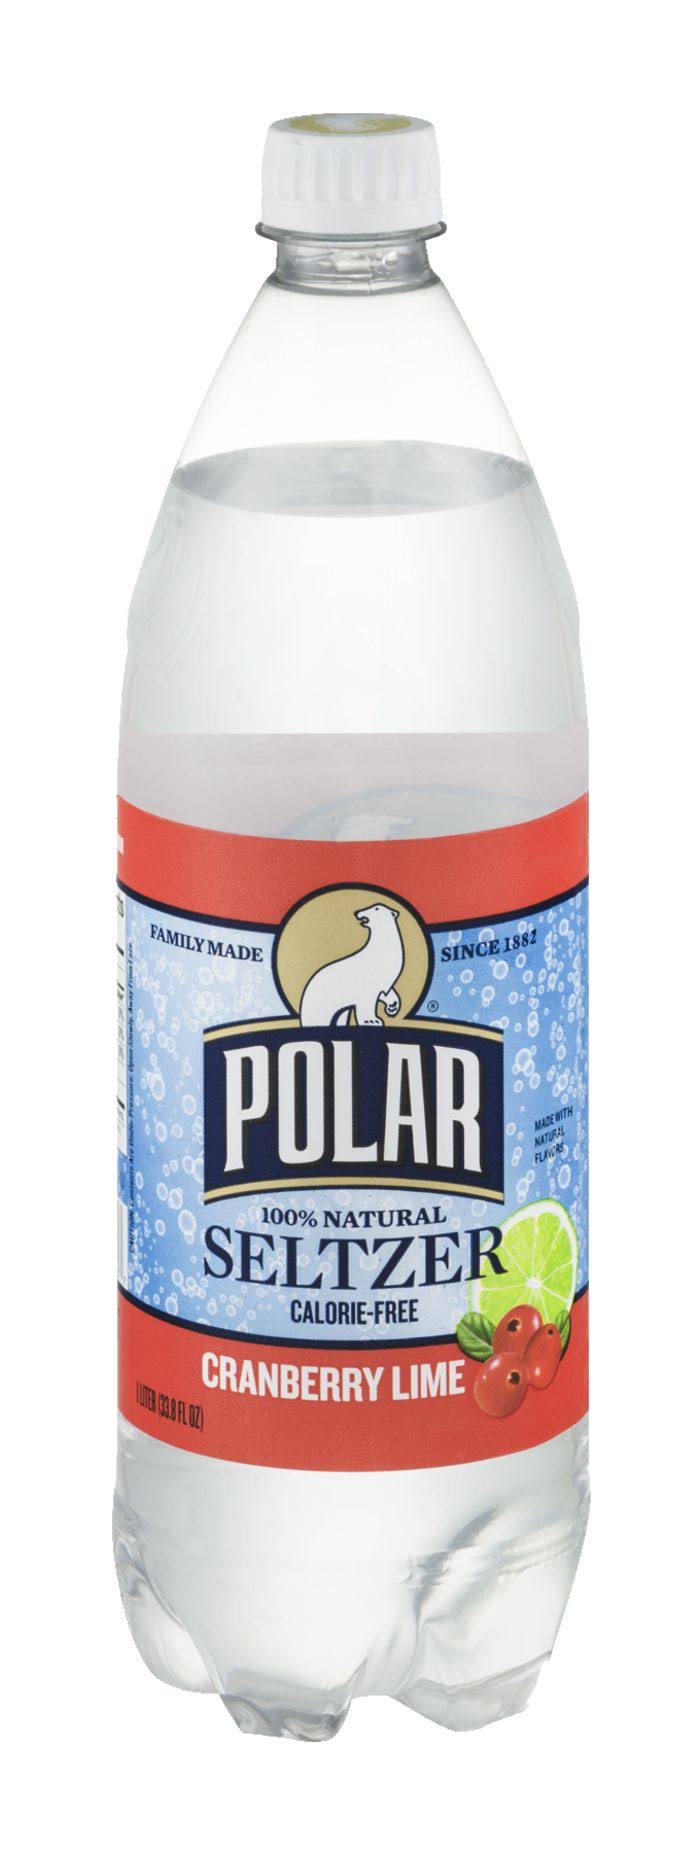 Polar Seltzer Cranberry Lime - 1l